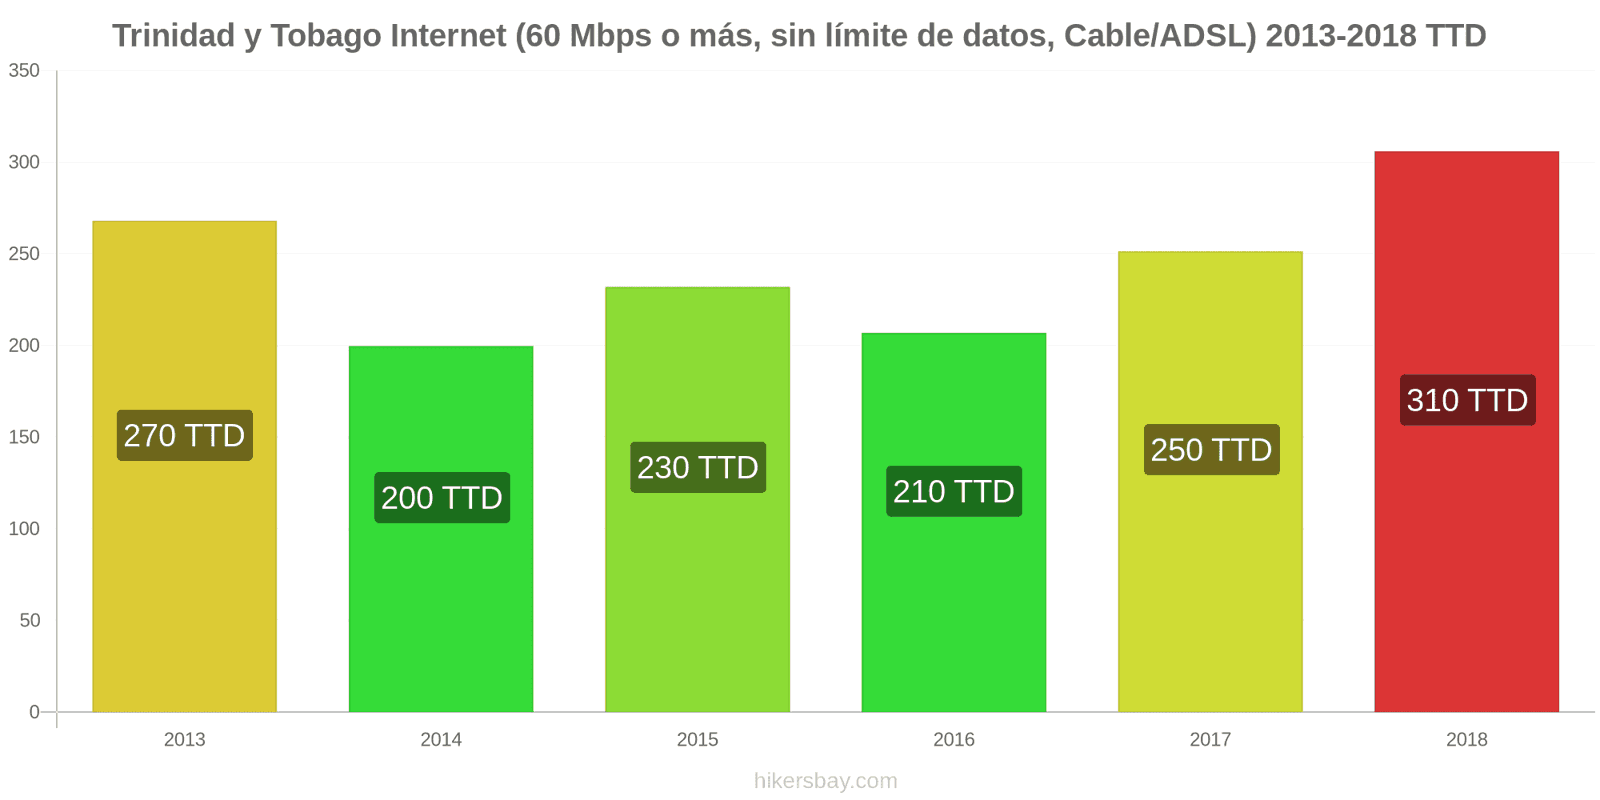 Trinidad y Tobago cambios de precios Internet (60 Mbps o más, datos ilimitados, cable/ADSL) hikersbay.com